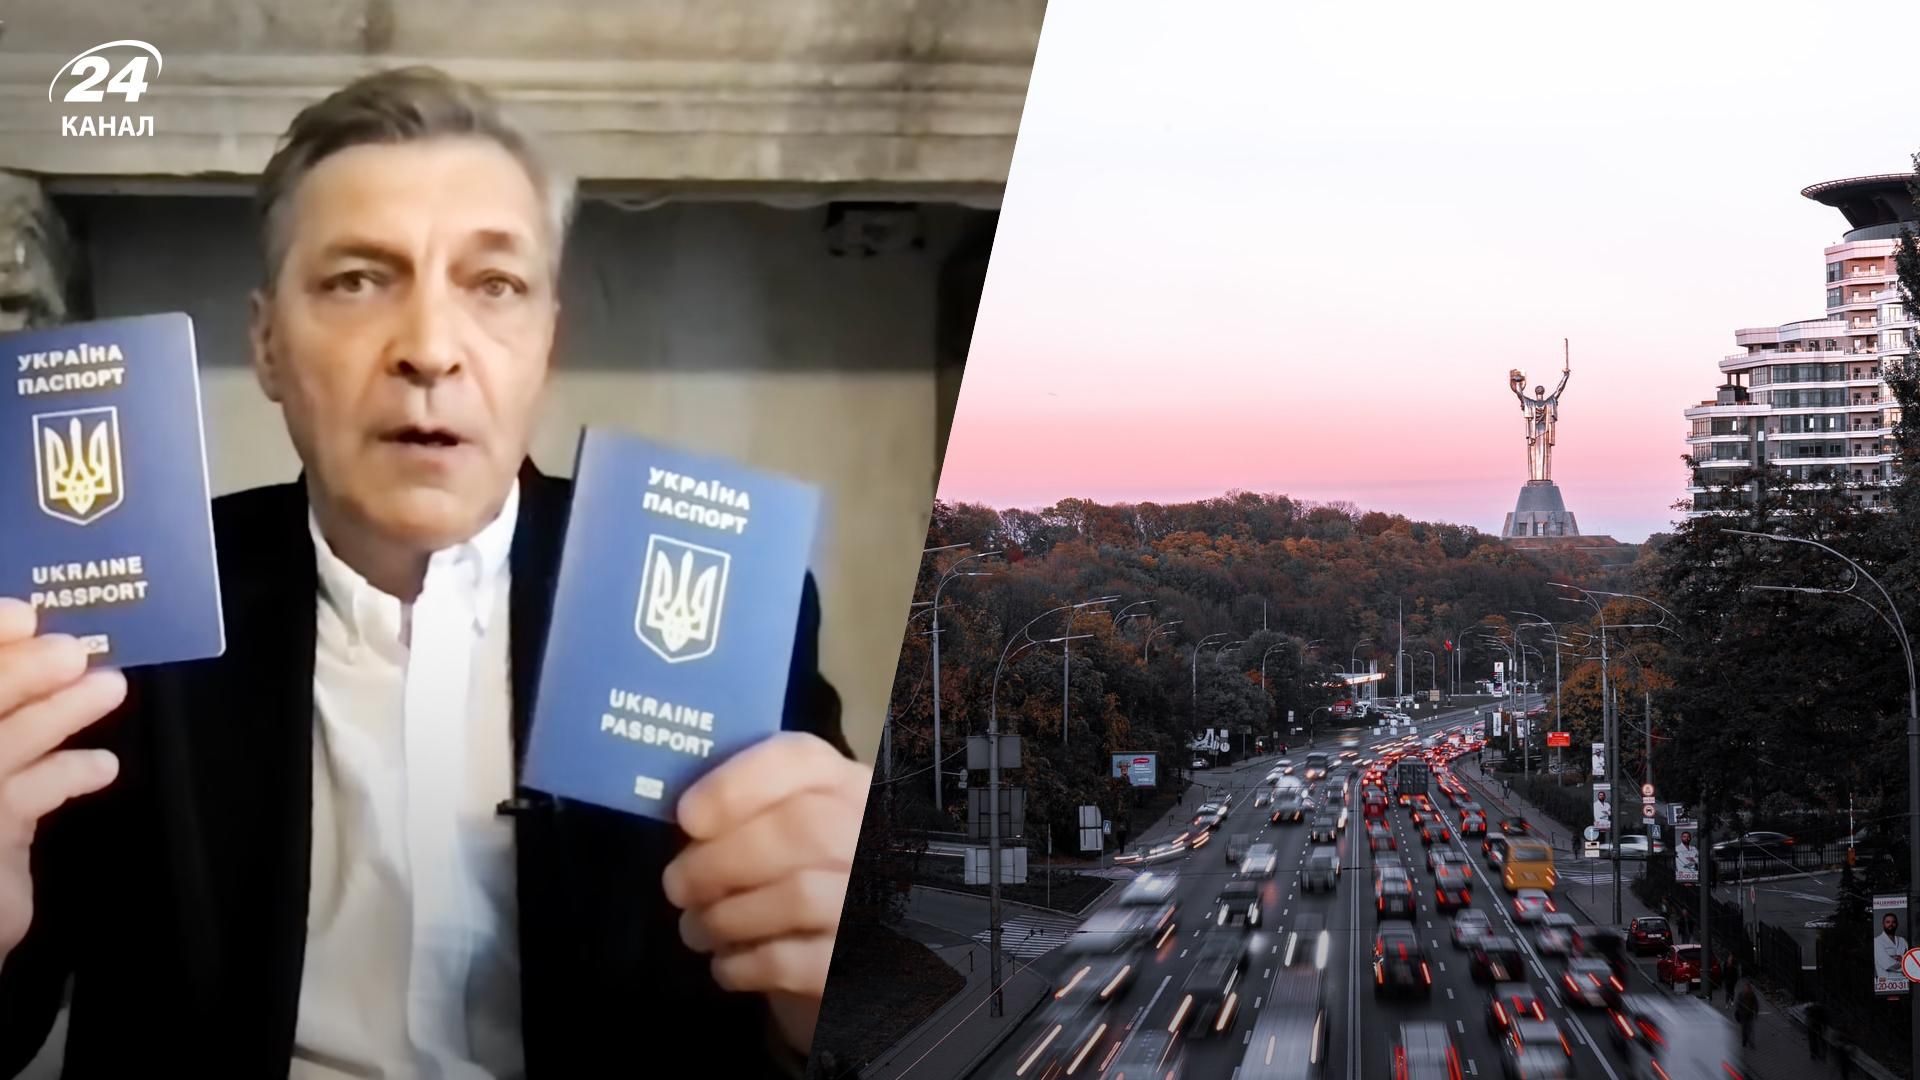 Невзоров в конце своего эфира показал два украинских паспорта: вероятно, свой и жены